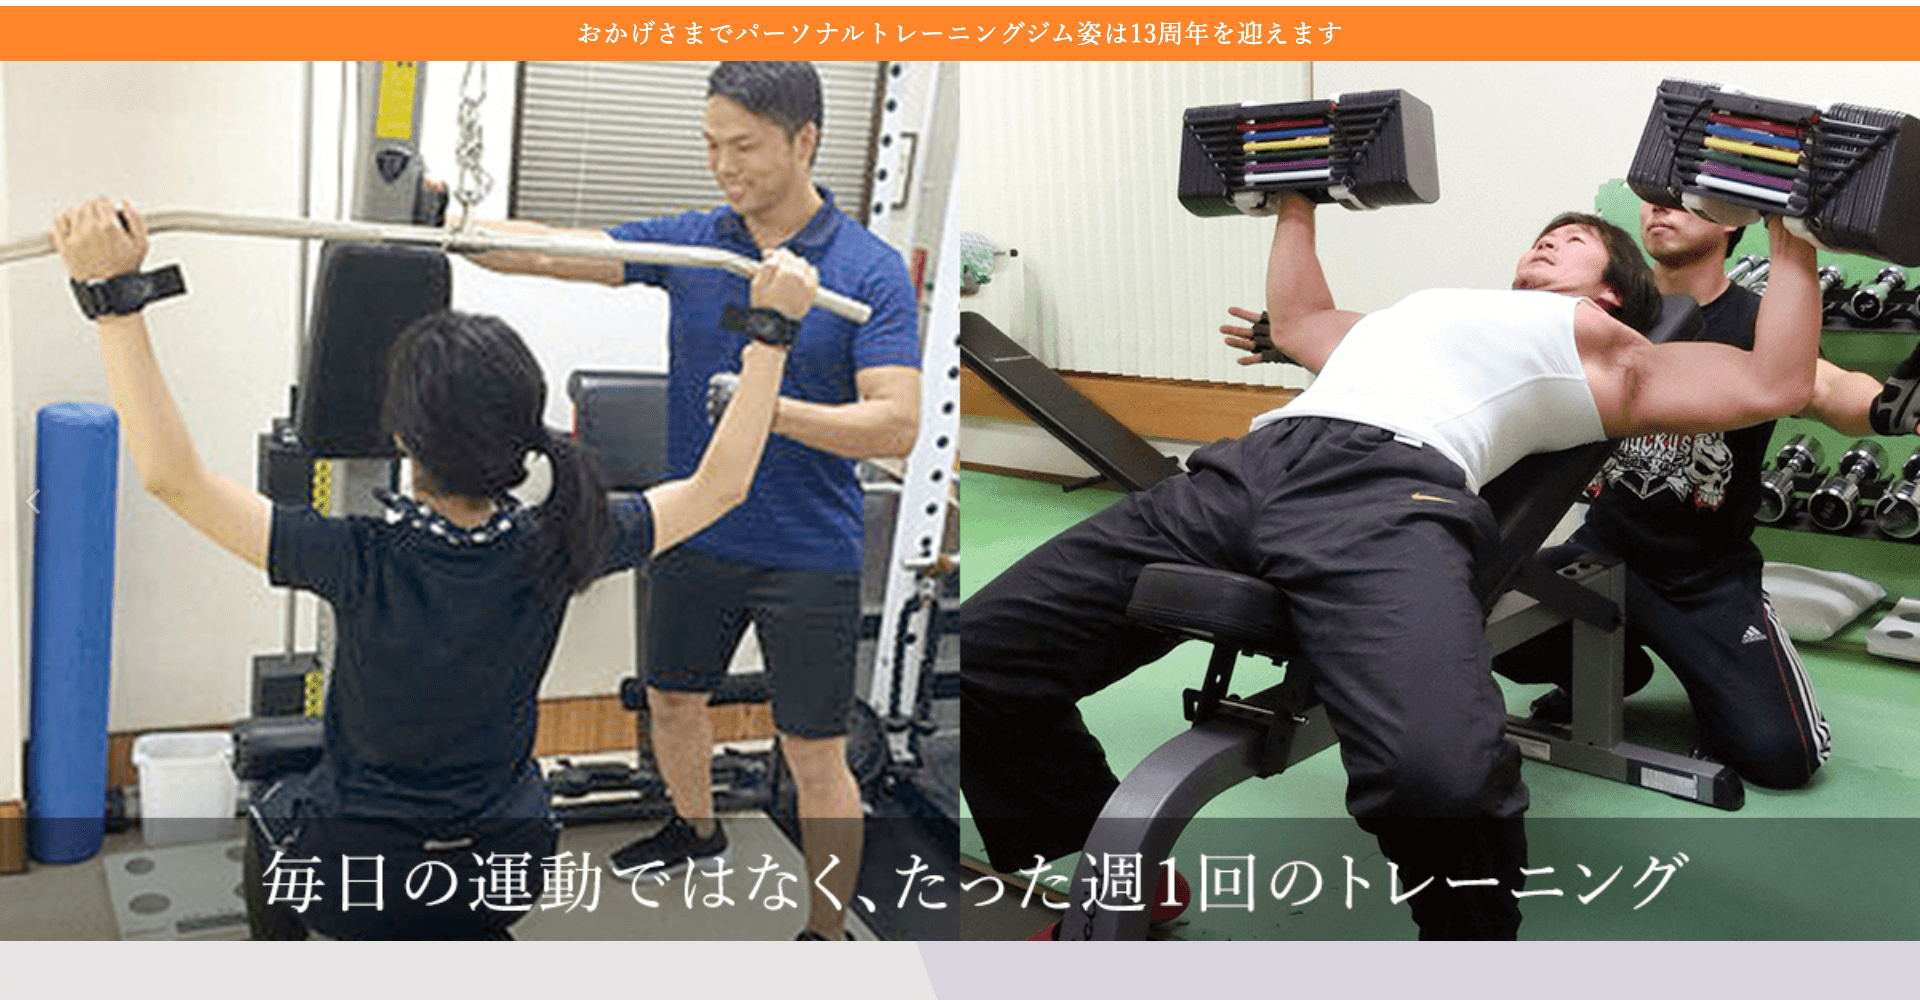 【ロイヤルスポーツクラブ2】岡崎 ジム・フィットネス・パーソナルトレーニング・ボディメイク